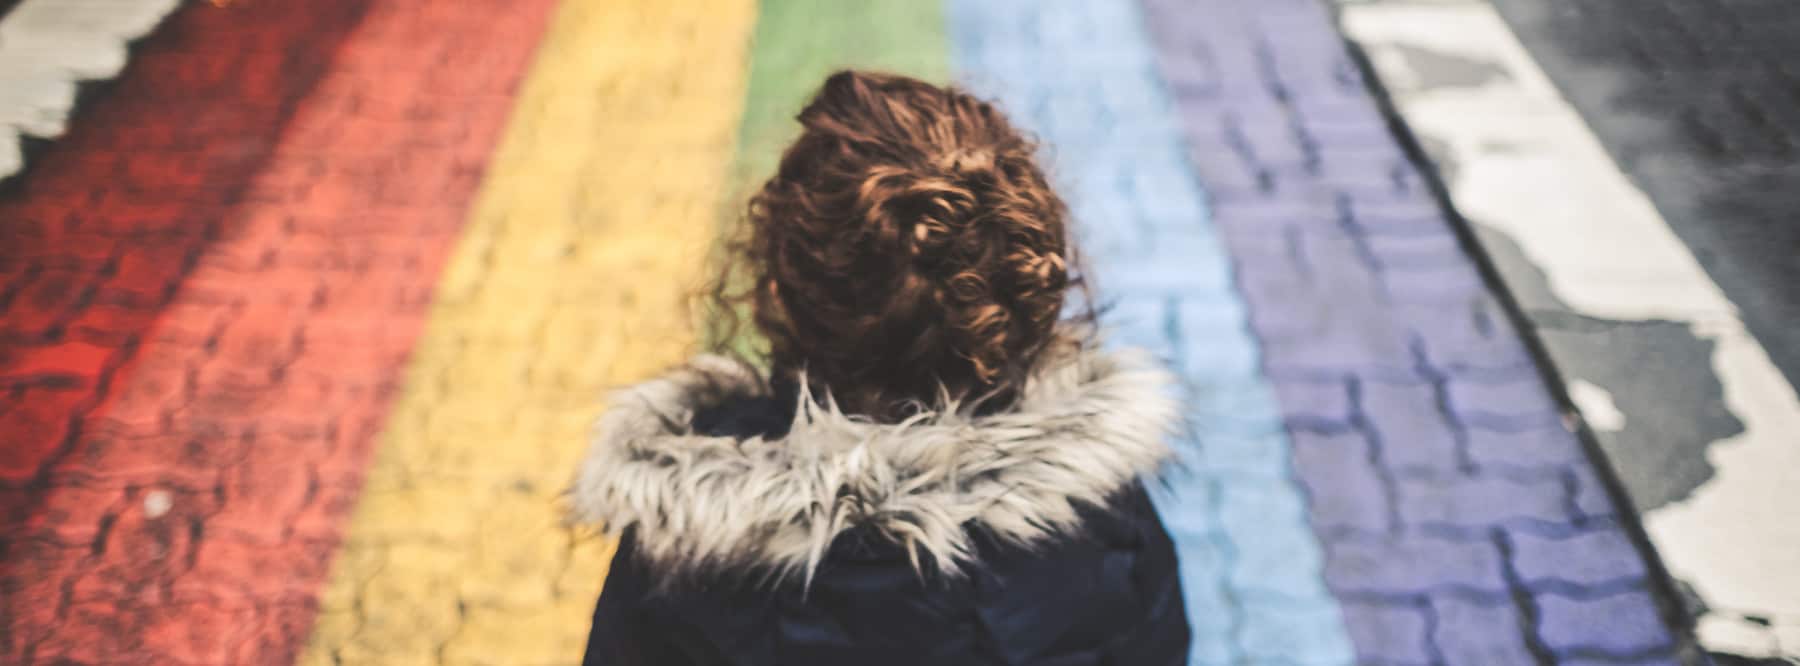 Eine Frau steht vor einem mit einem Regenbogen bemalten Stück Asphalt.